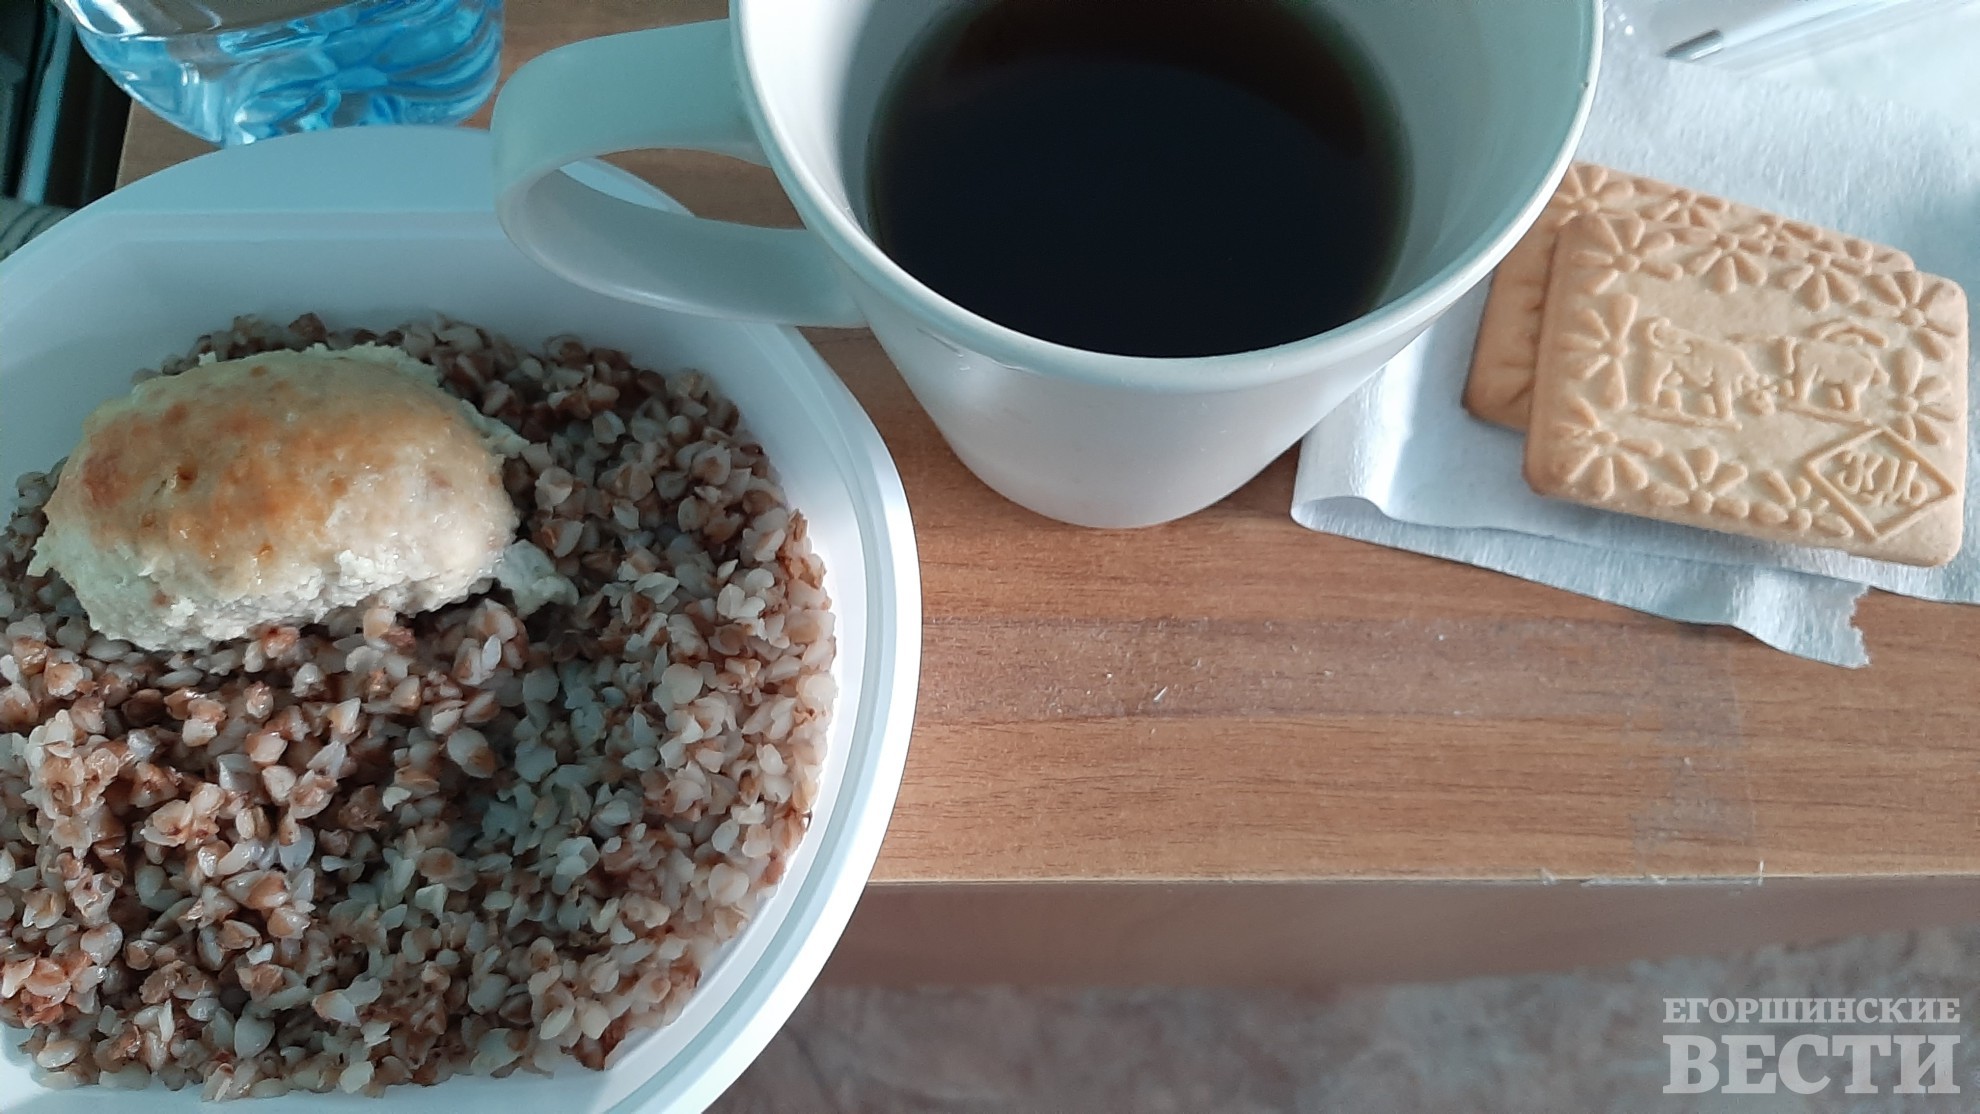 Скромный больничный ужин - куриная котлетка с гречей и пара печенюшек с чаем.  Фото: Татьяна Шарафиева, 